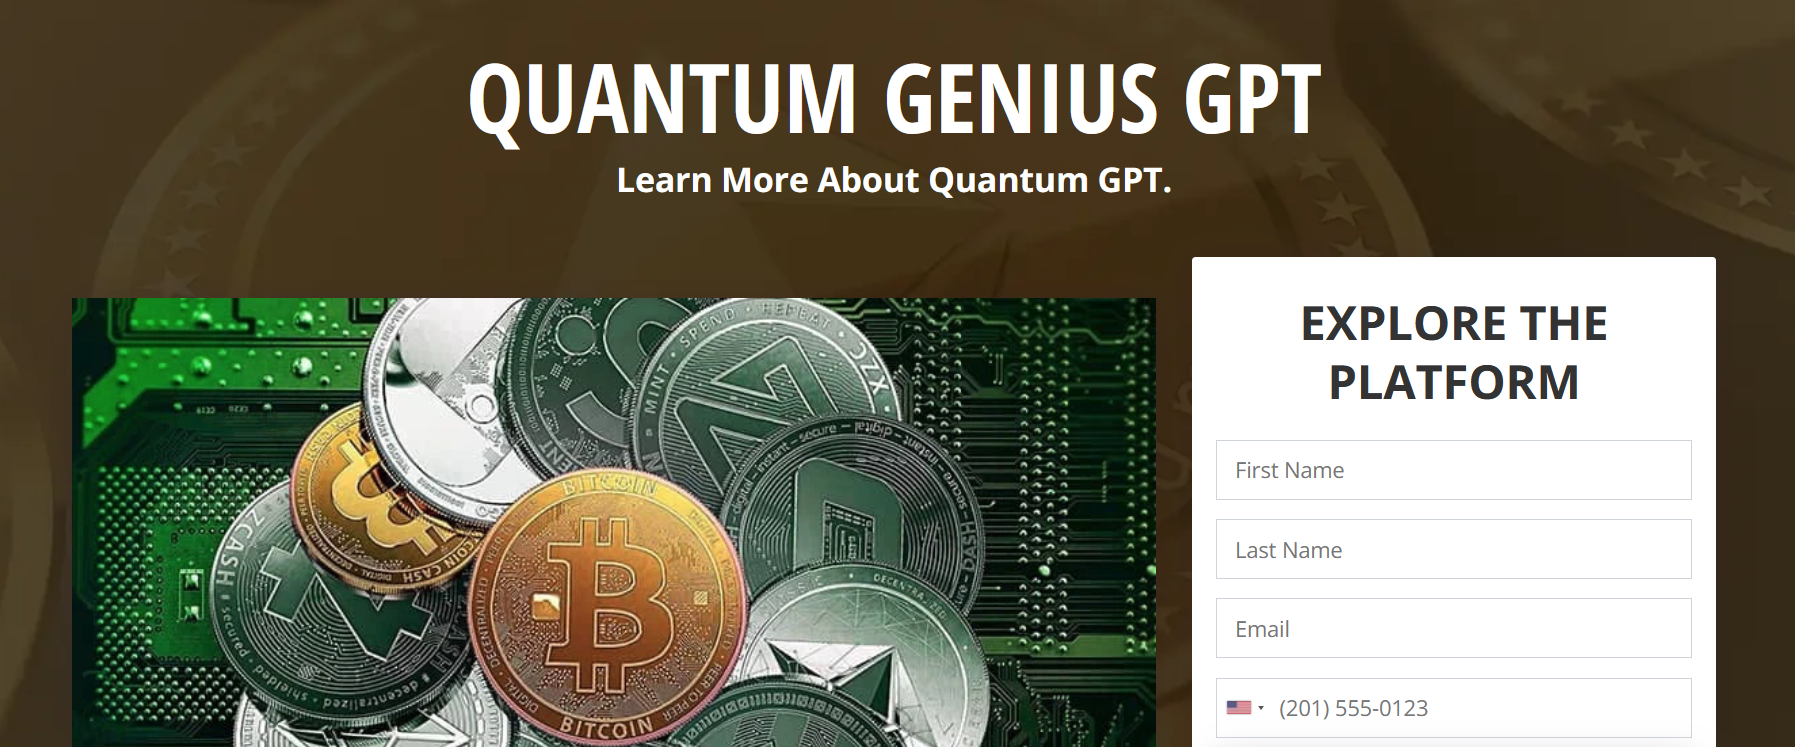 Quantum Genius GPT